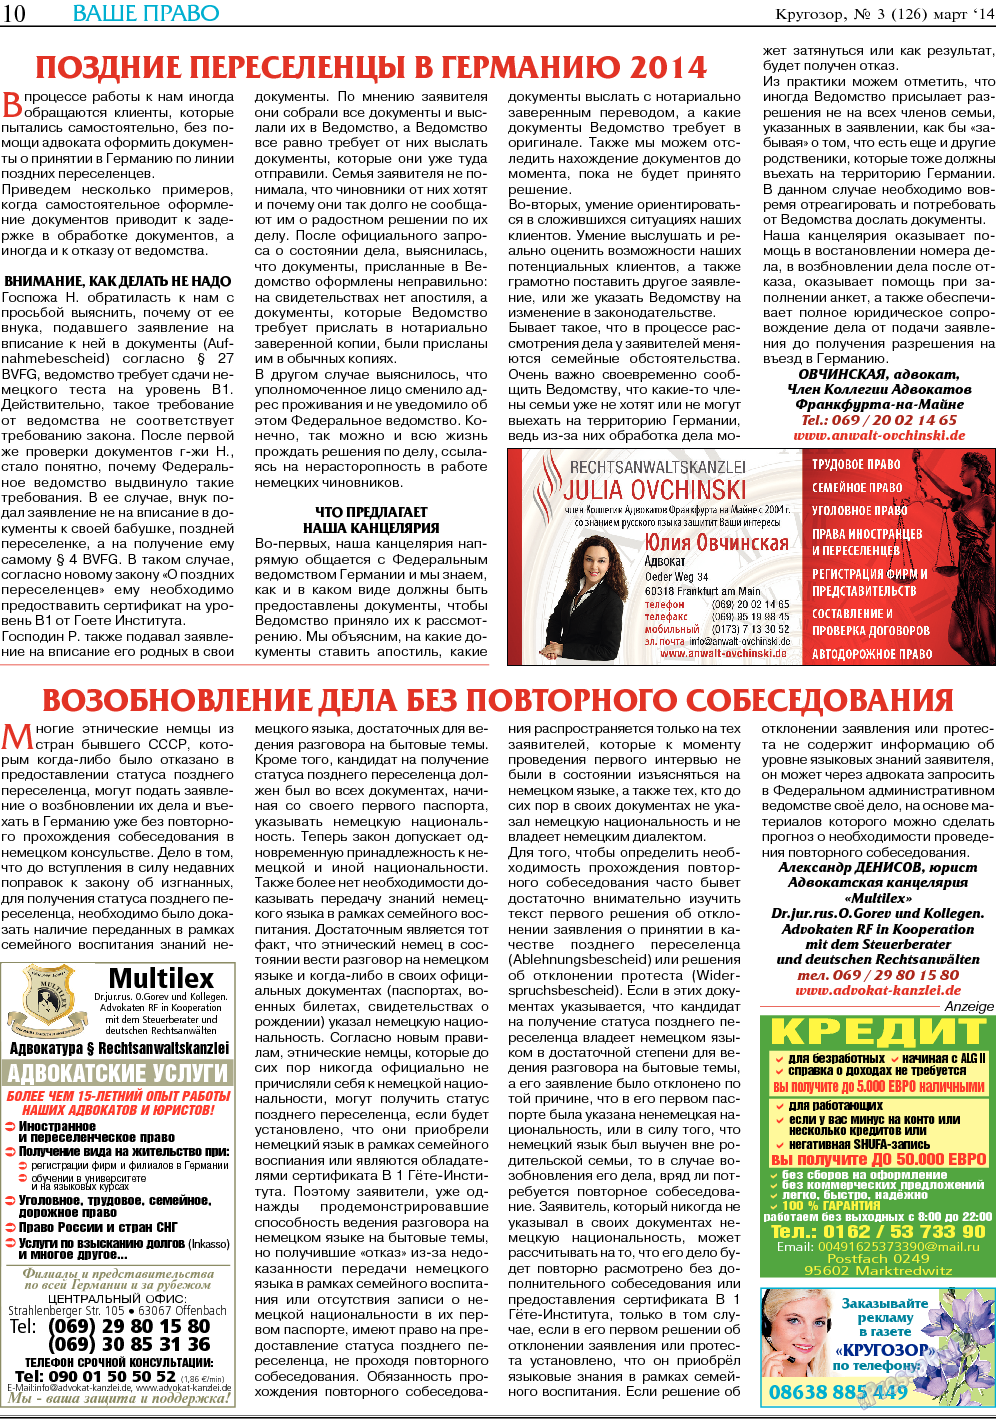 Кругозор, газета. 2014 №3 стр.10